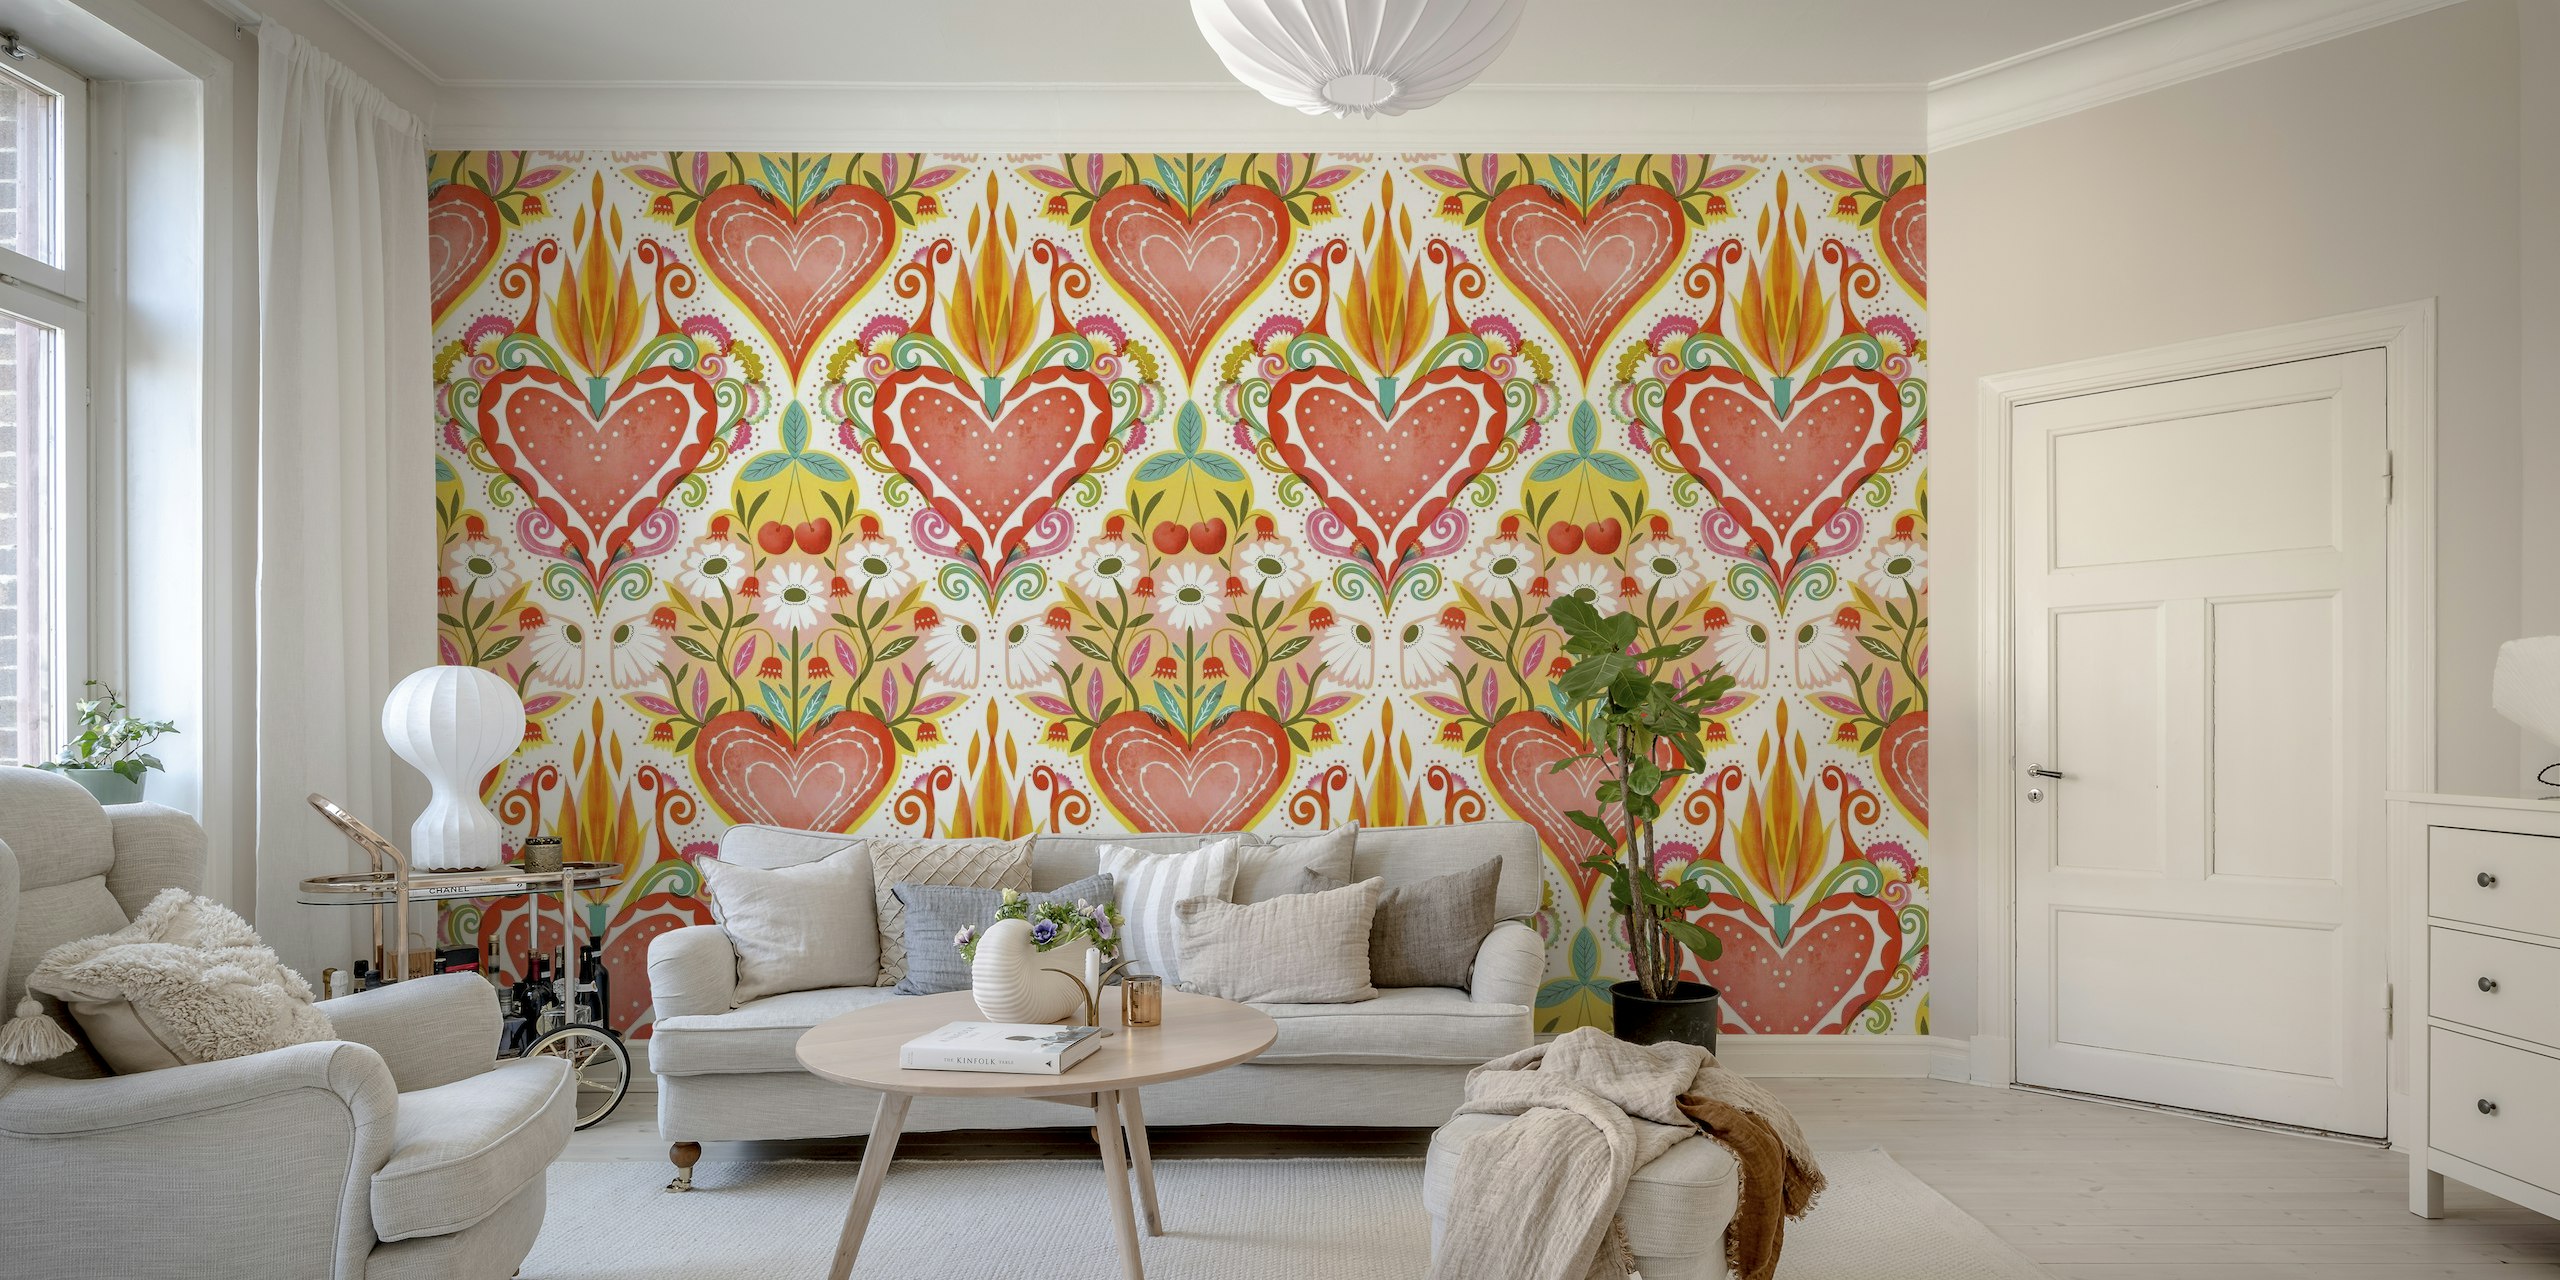 Mural de parede colorido de inspiração folclórica com um grande coração central com chamas e corações menores ao redor e padrões florais.